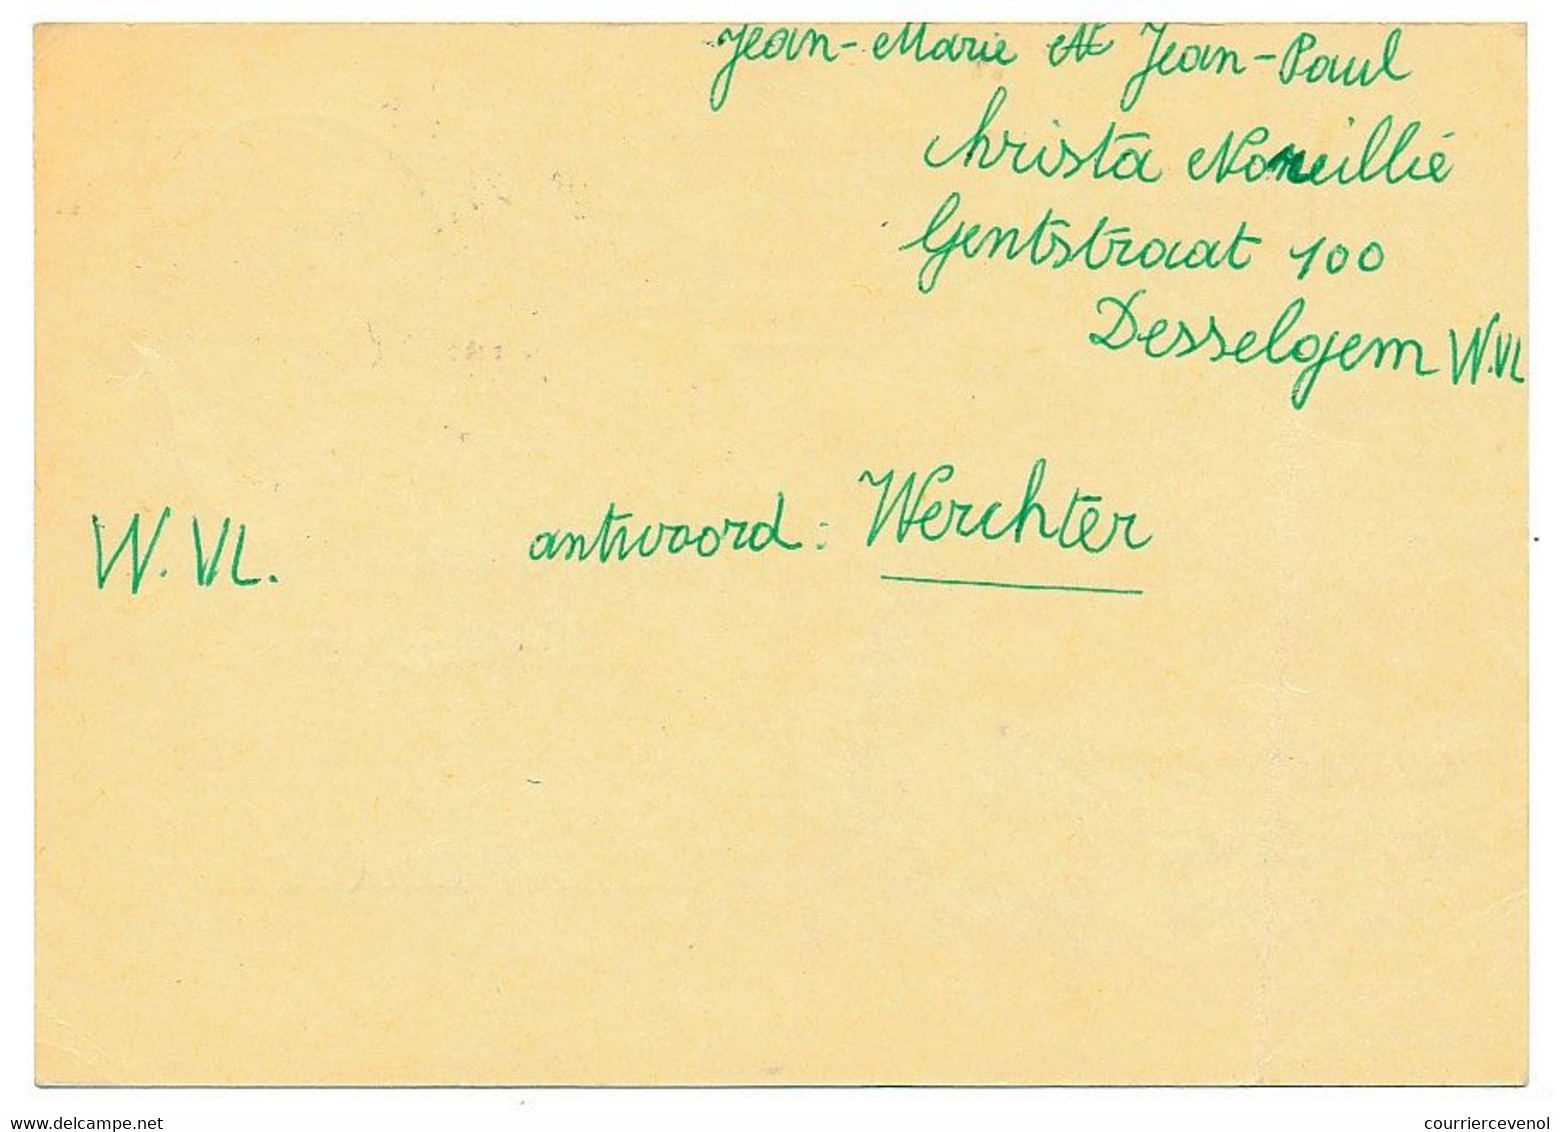 BELGIQUE => Carte Postale - 2F - Publicité "UNIC (Knokke)"  - Publibel 1950 - Publibels